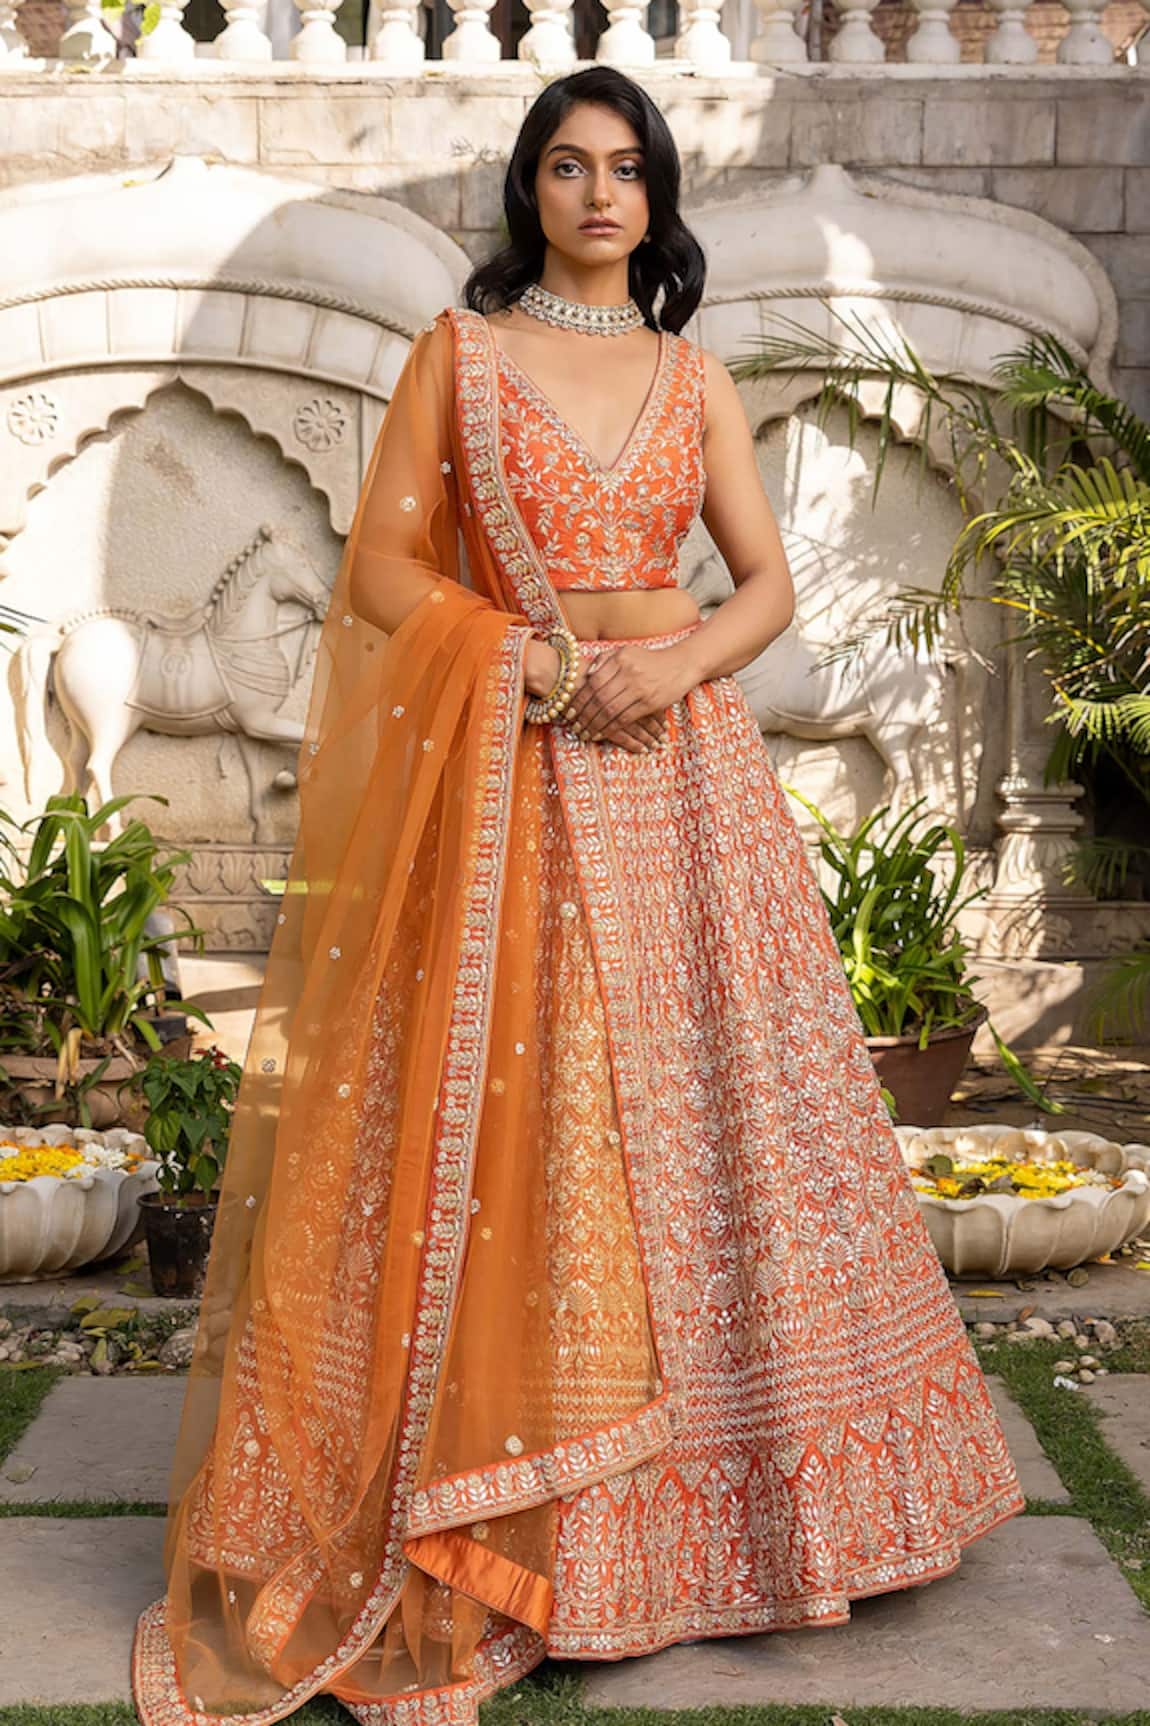 Suruchi Parakh Floral Embroidered Bridal Lehenga Set